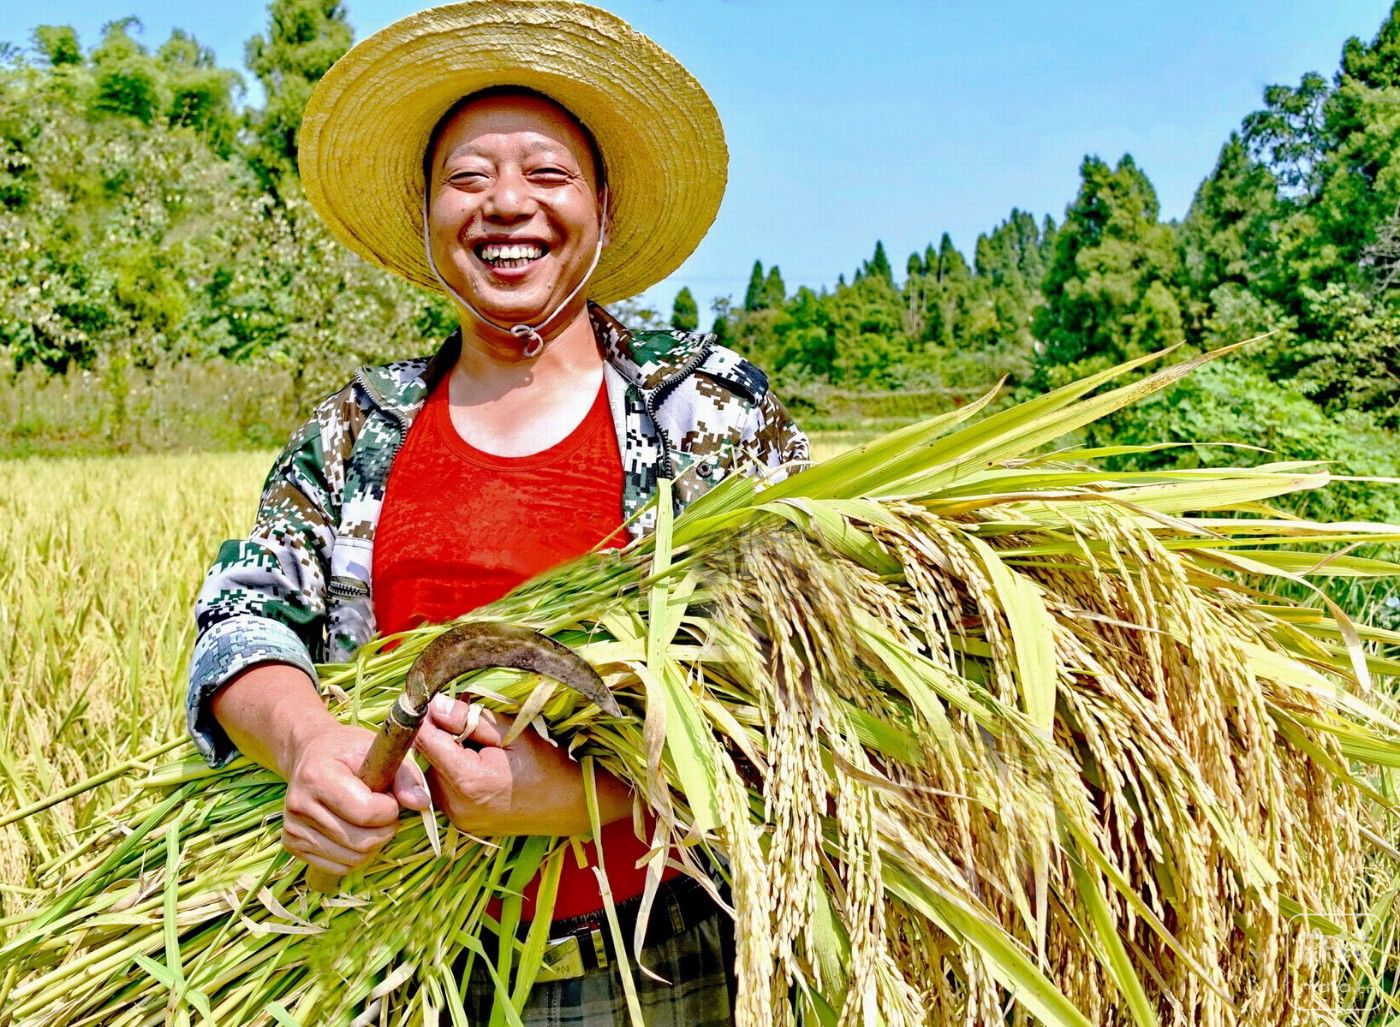 【第5届中国农民丰收节】《丰收乐了庄稼人》